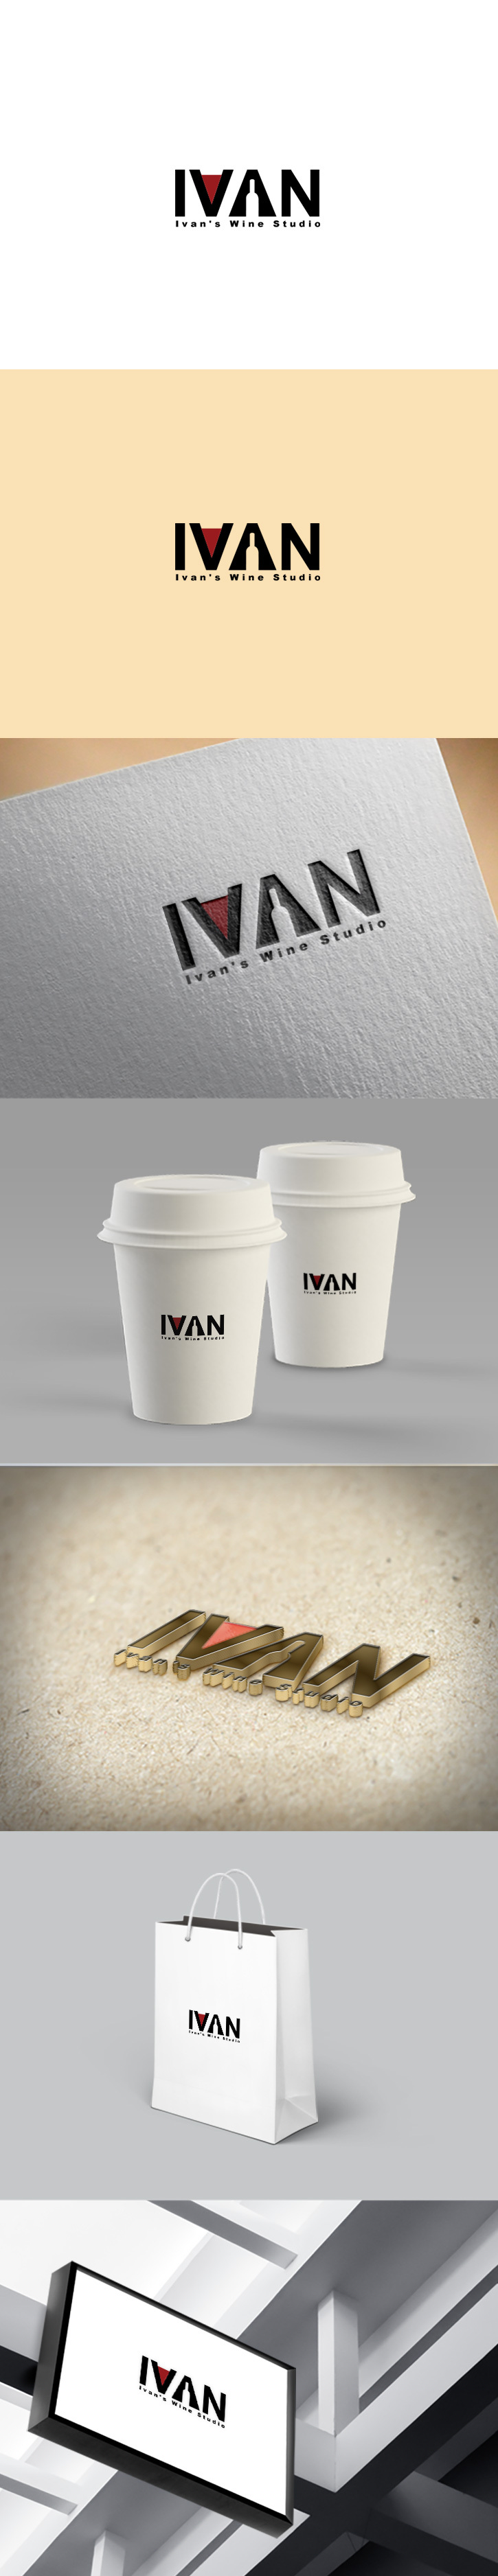 Ivan's Wine Studio    红酒的工作室logo设计图0